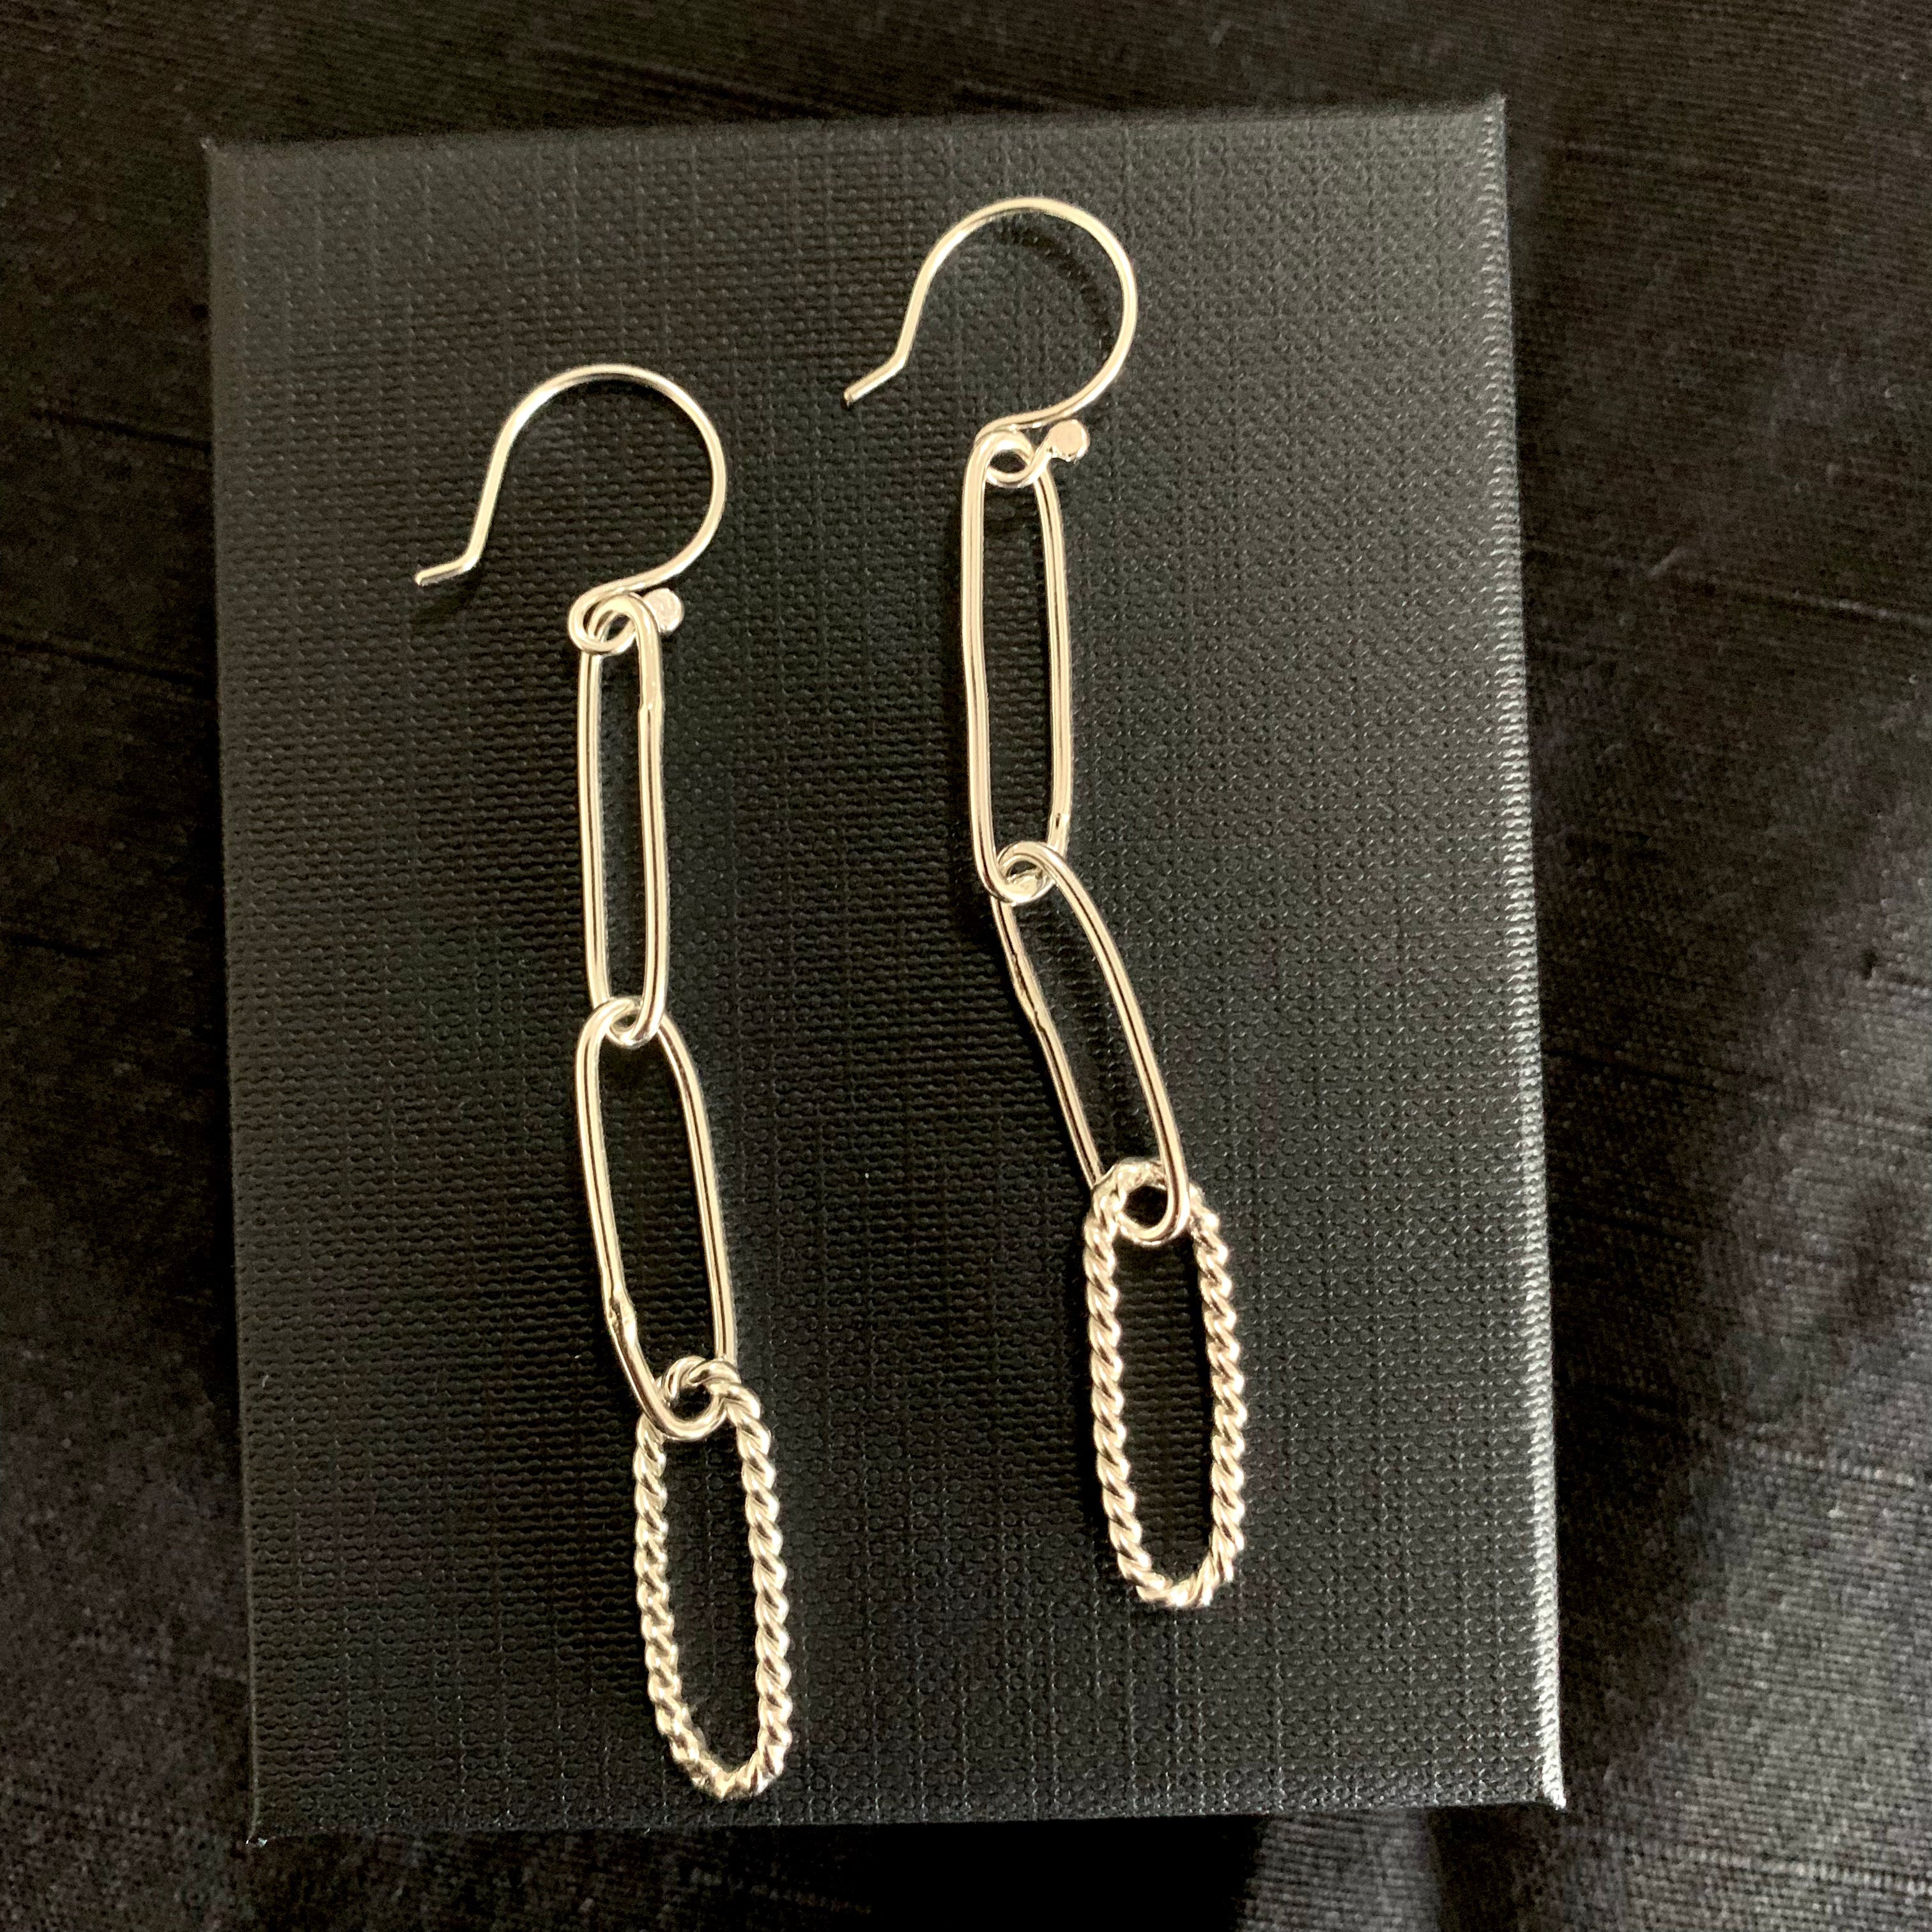 Fancy paperclip link earrings